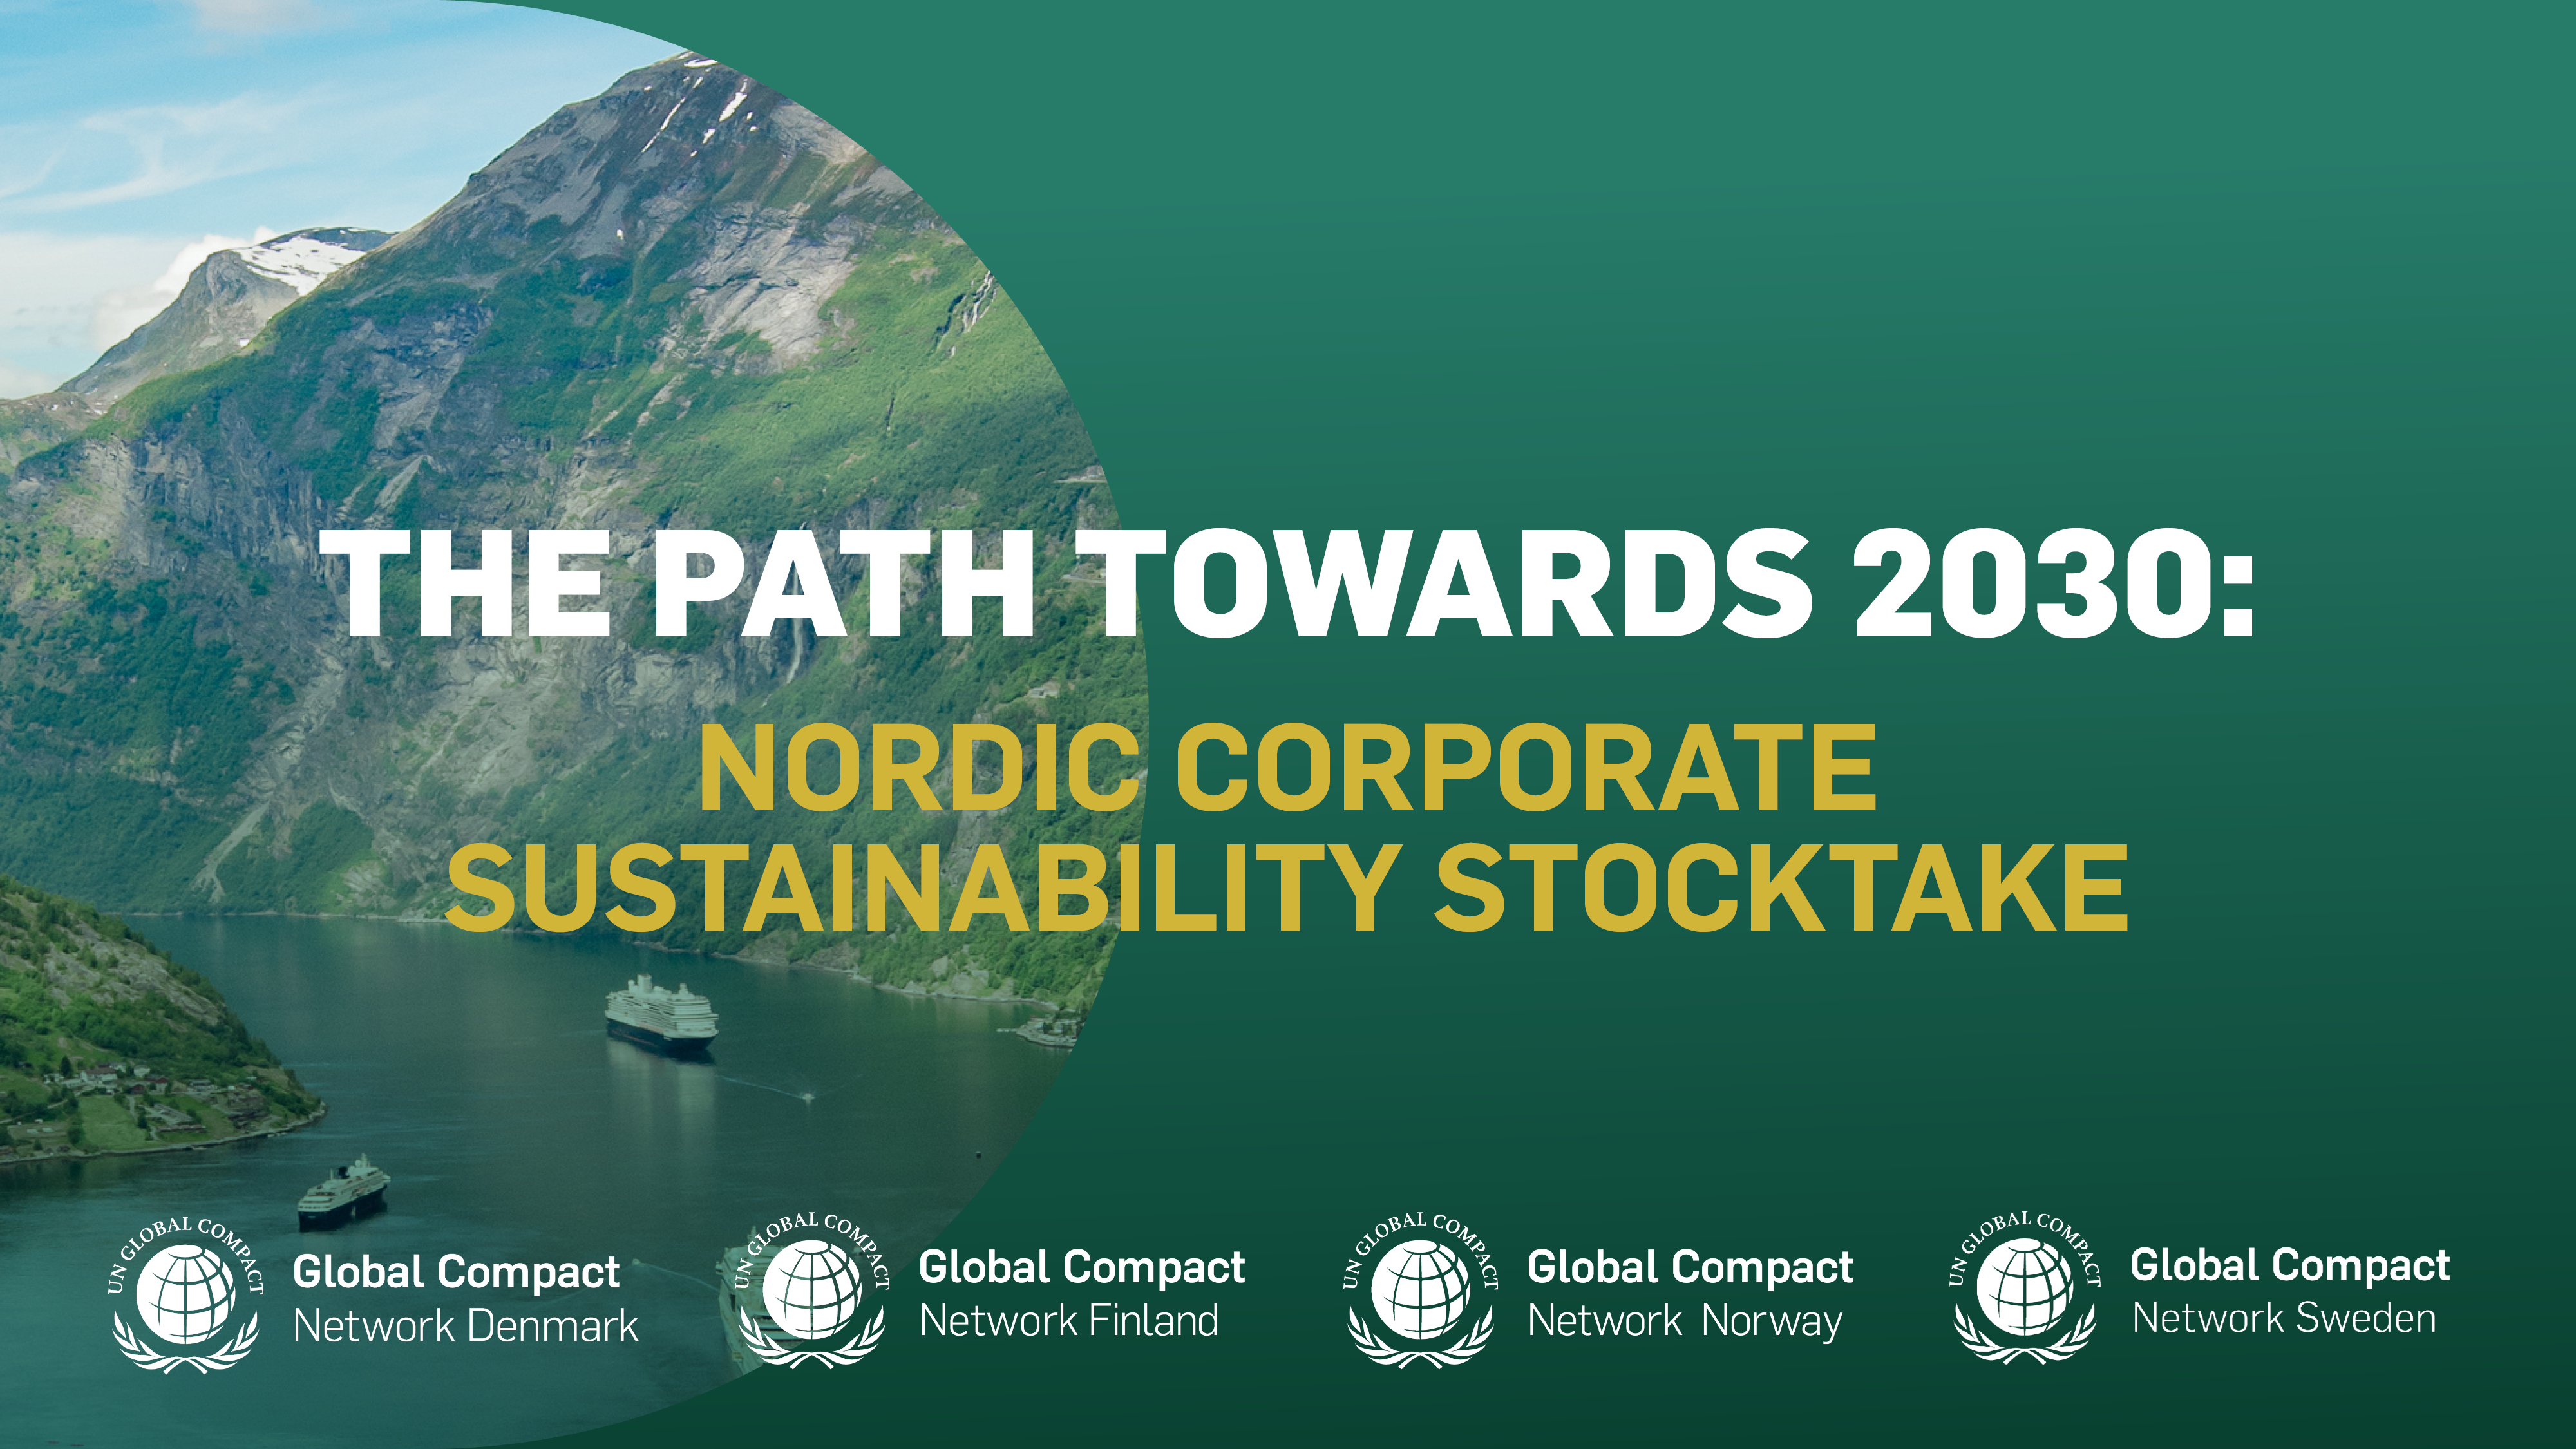 Olemme puolivälissä Agenda 2030:ta ja YK:n kestävän kehityksen tavoitteiden saavuttamista. YK:n yleiskokousviikolla Suomen, Ruotsin, Tanskan ja Norjan UN Global Compact -paikallisverkostot julkistavat raportin, joka selvittää pohjoismaisten yritysten näkemyksiä liiketoiminnasta ja kestävän kehityksen tilasta.